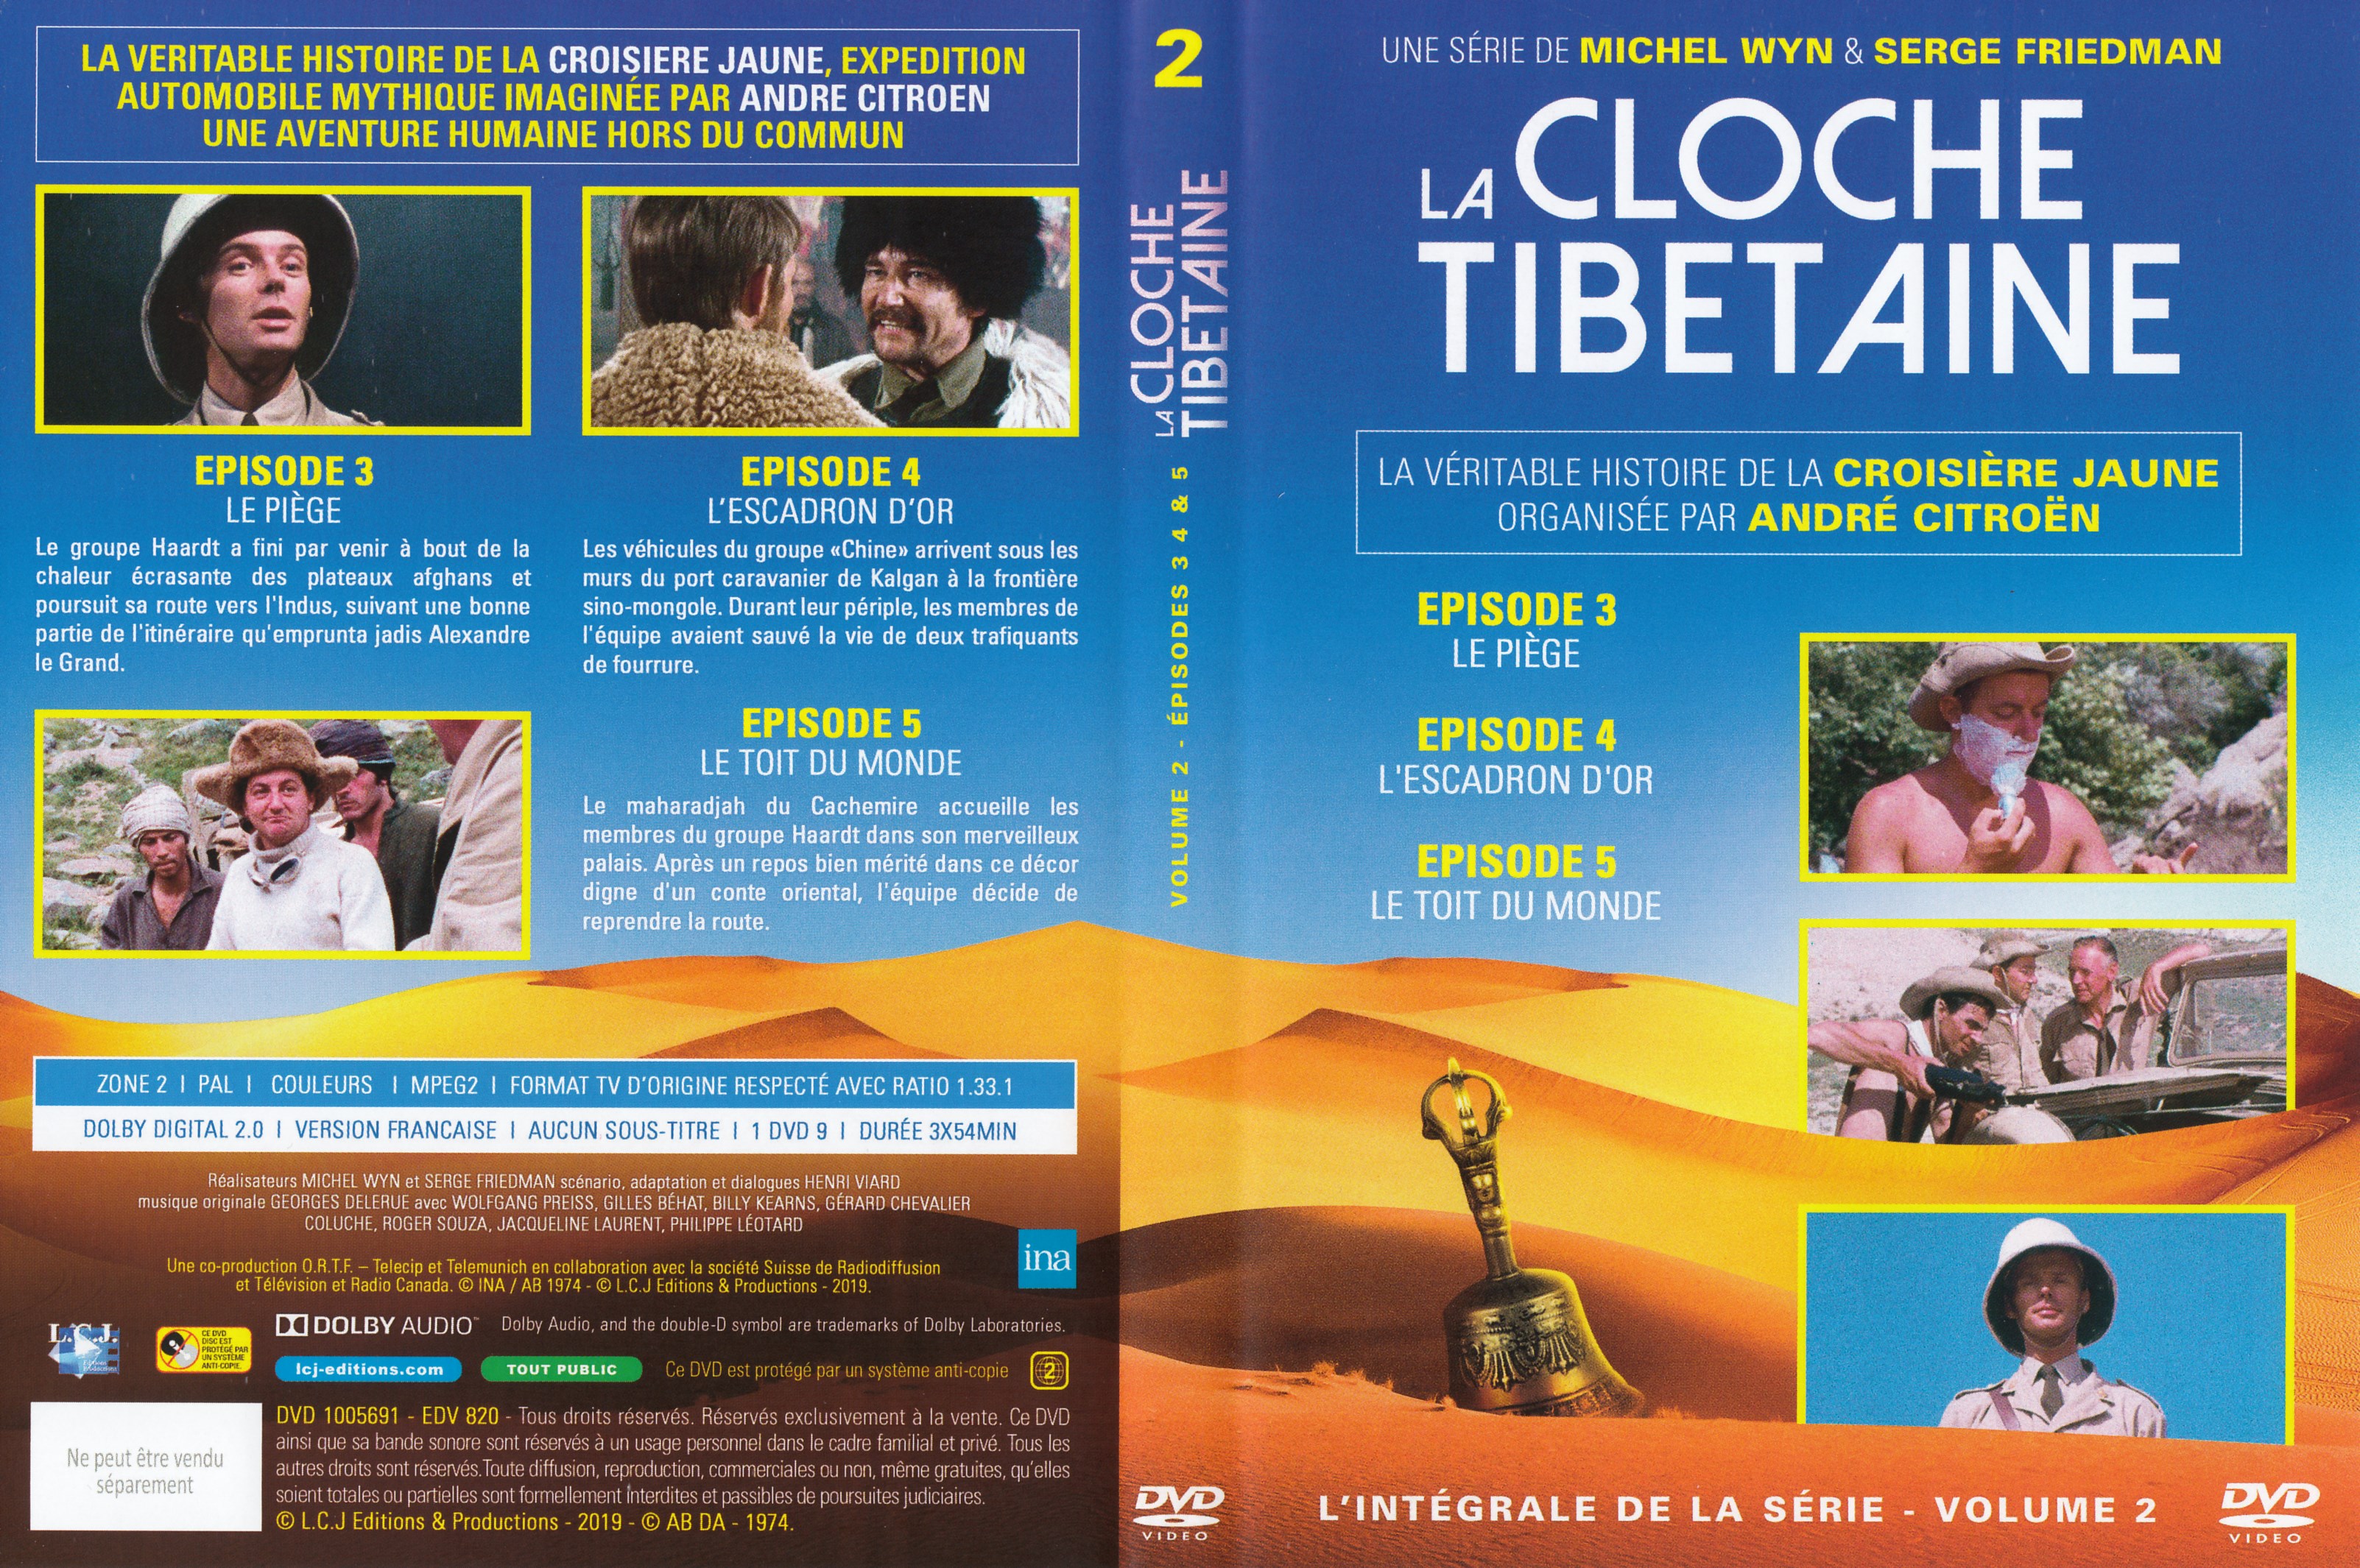 Jaquette DVD La cloche Tibetaine vol 2